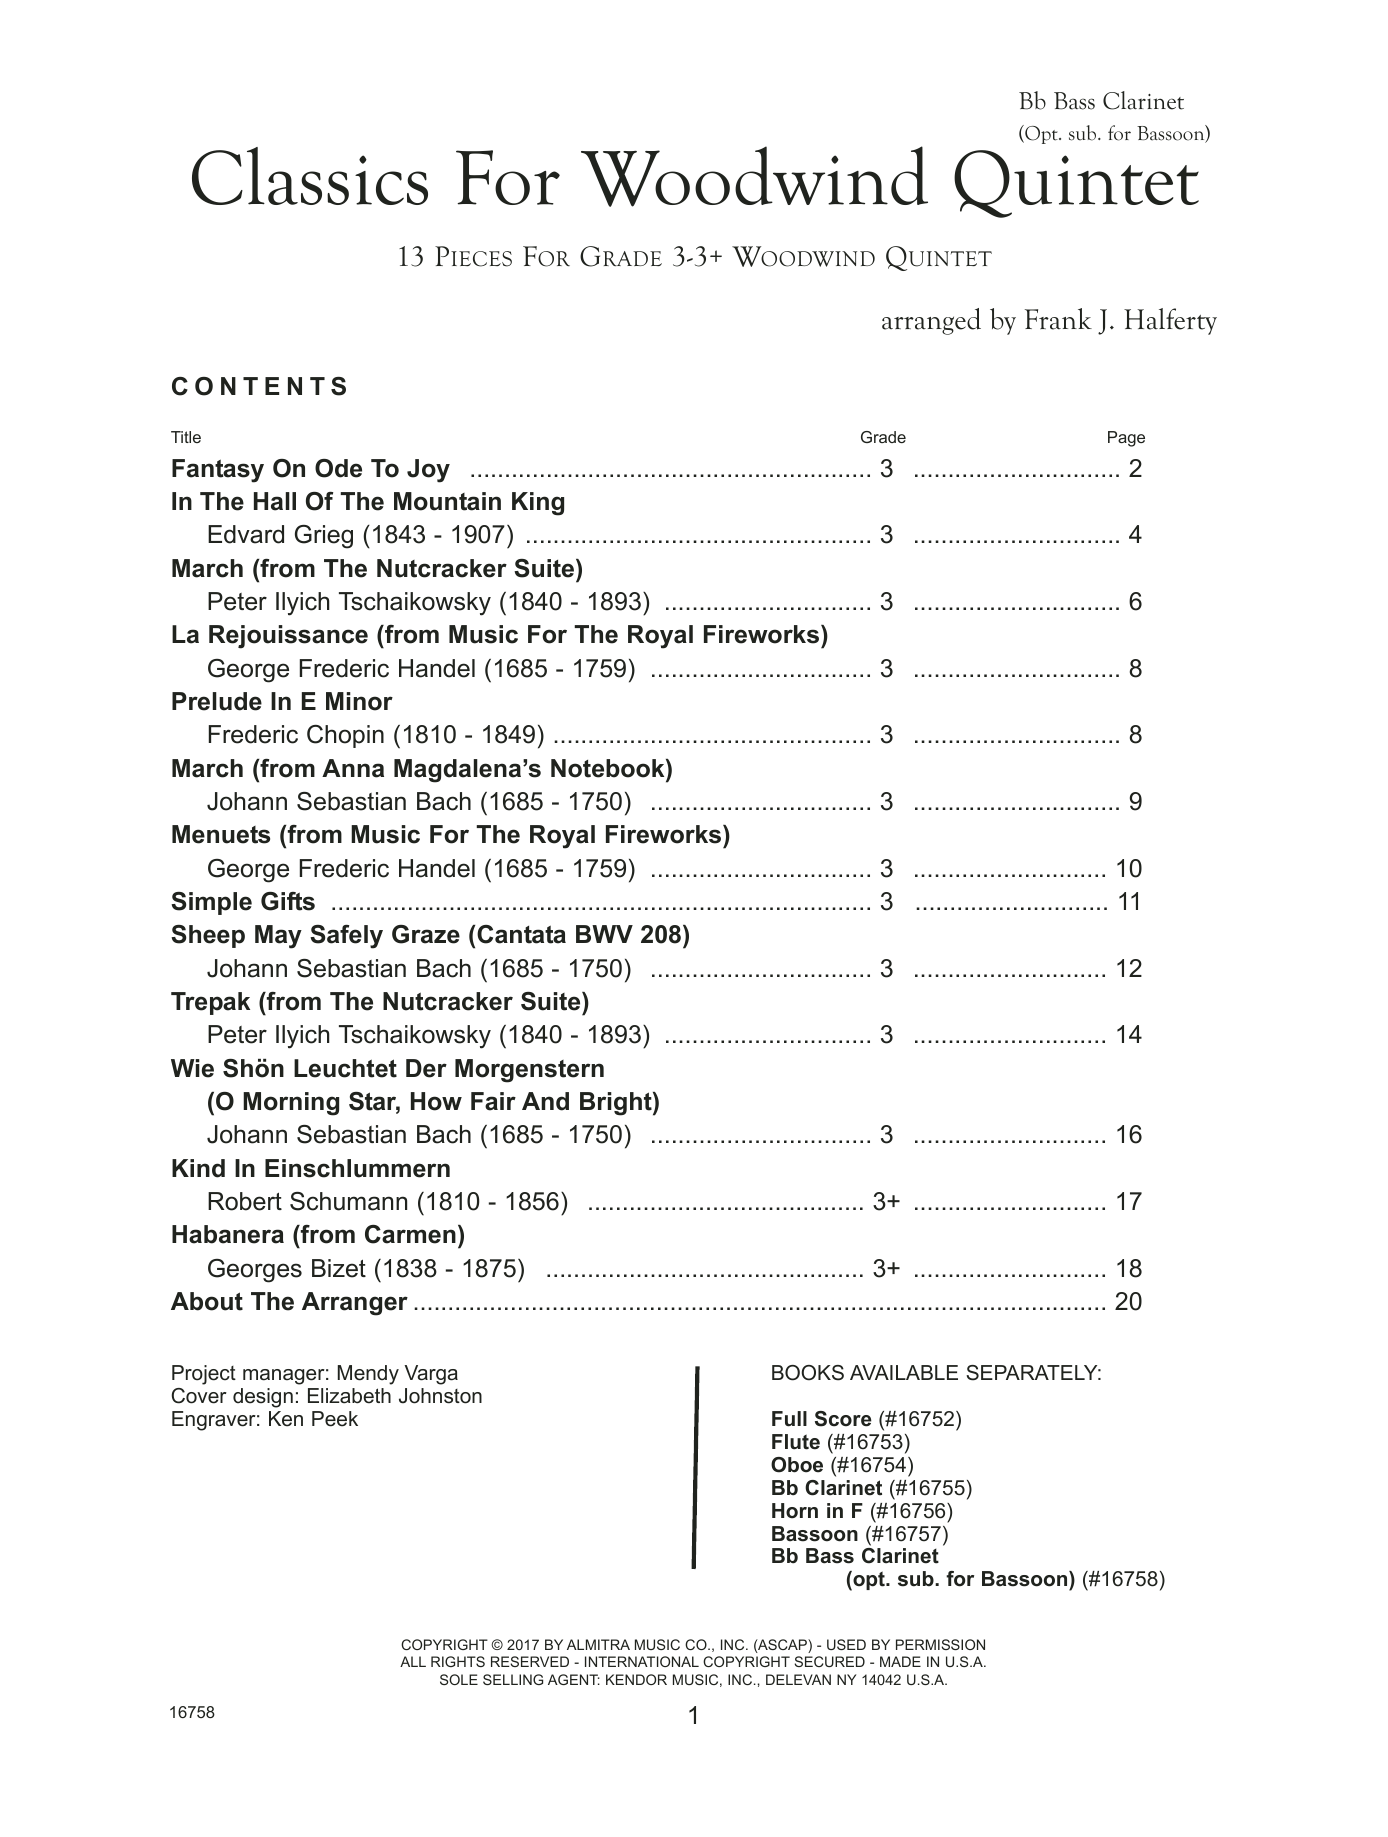 Download Frank J. Halferty Classics For Woodwind Quintet - Bb Bass Sheet Music